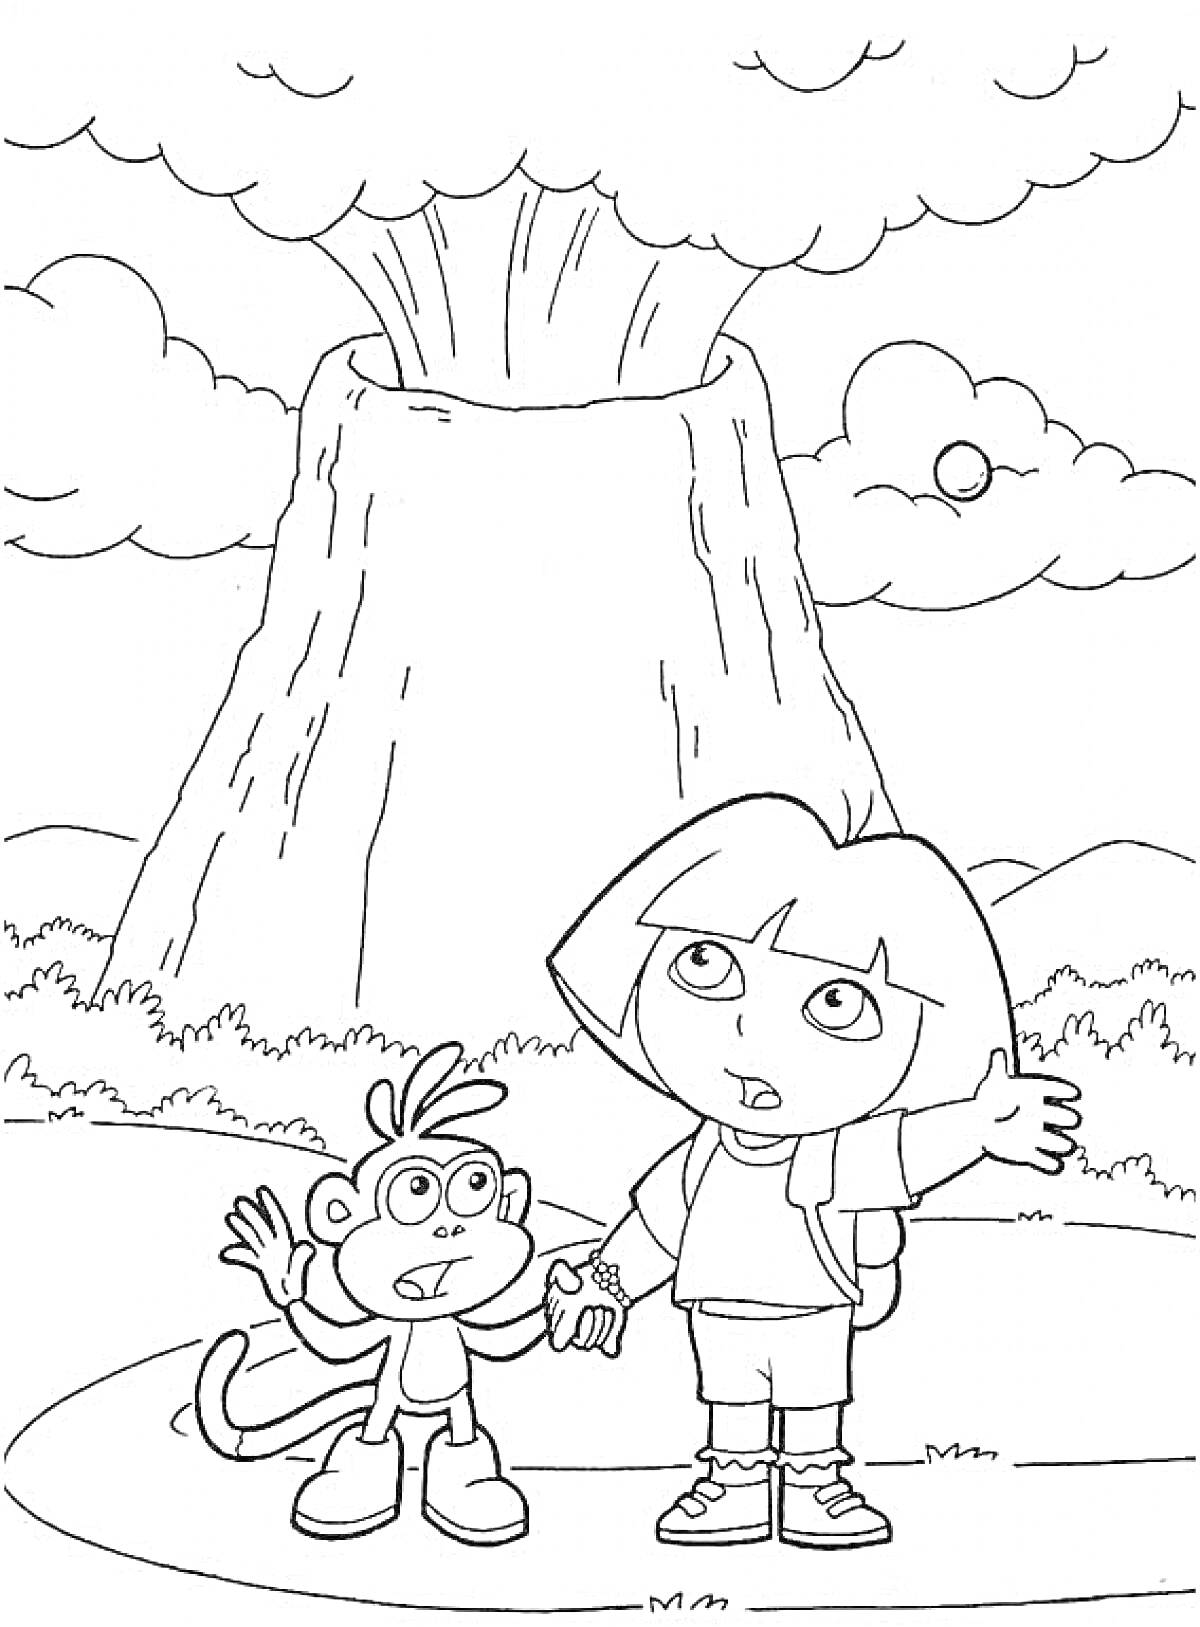 РаскраскаВулкан, девочка с рюкзаком показывает на вулкан, обезьянка с рюкзаком стоит рядом, облака и ландшафт на фоне